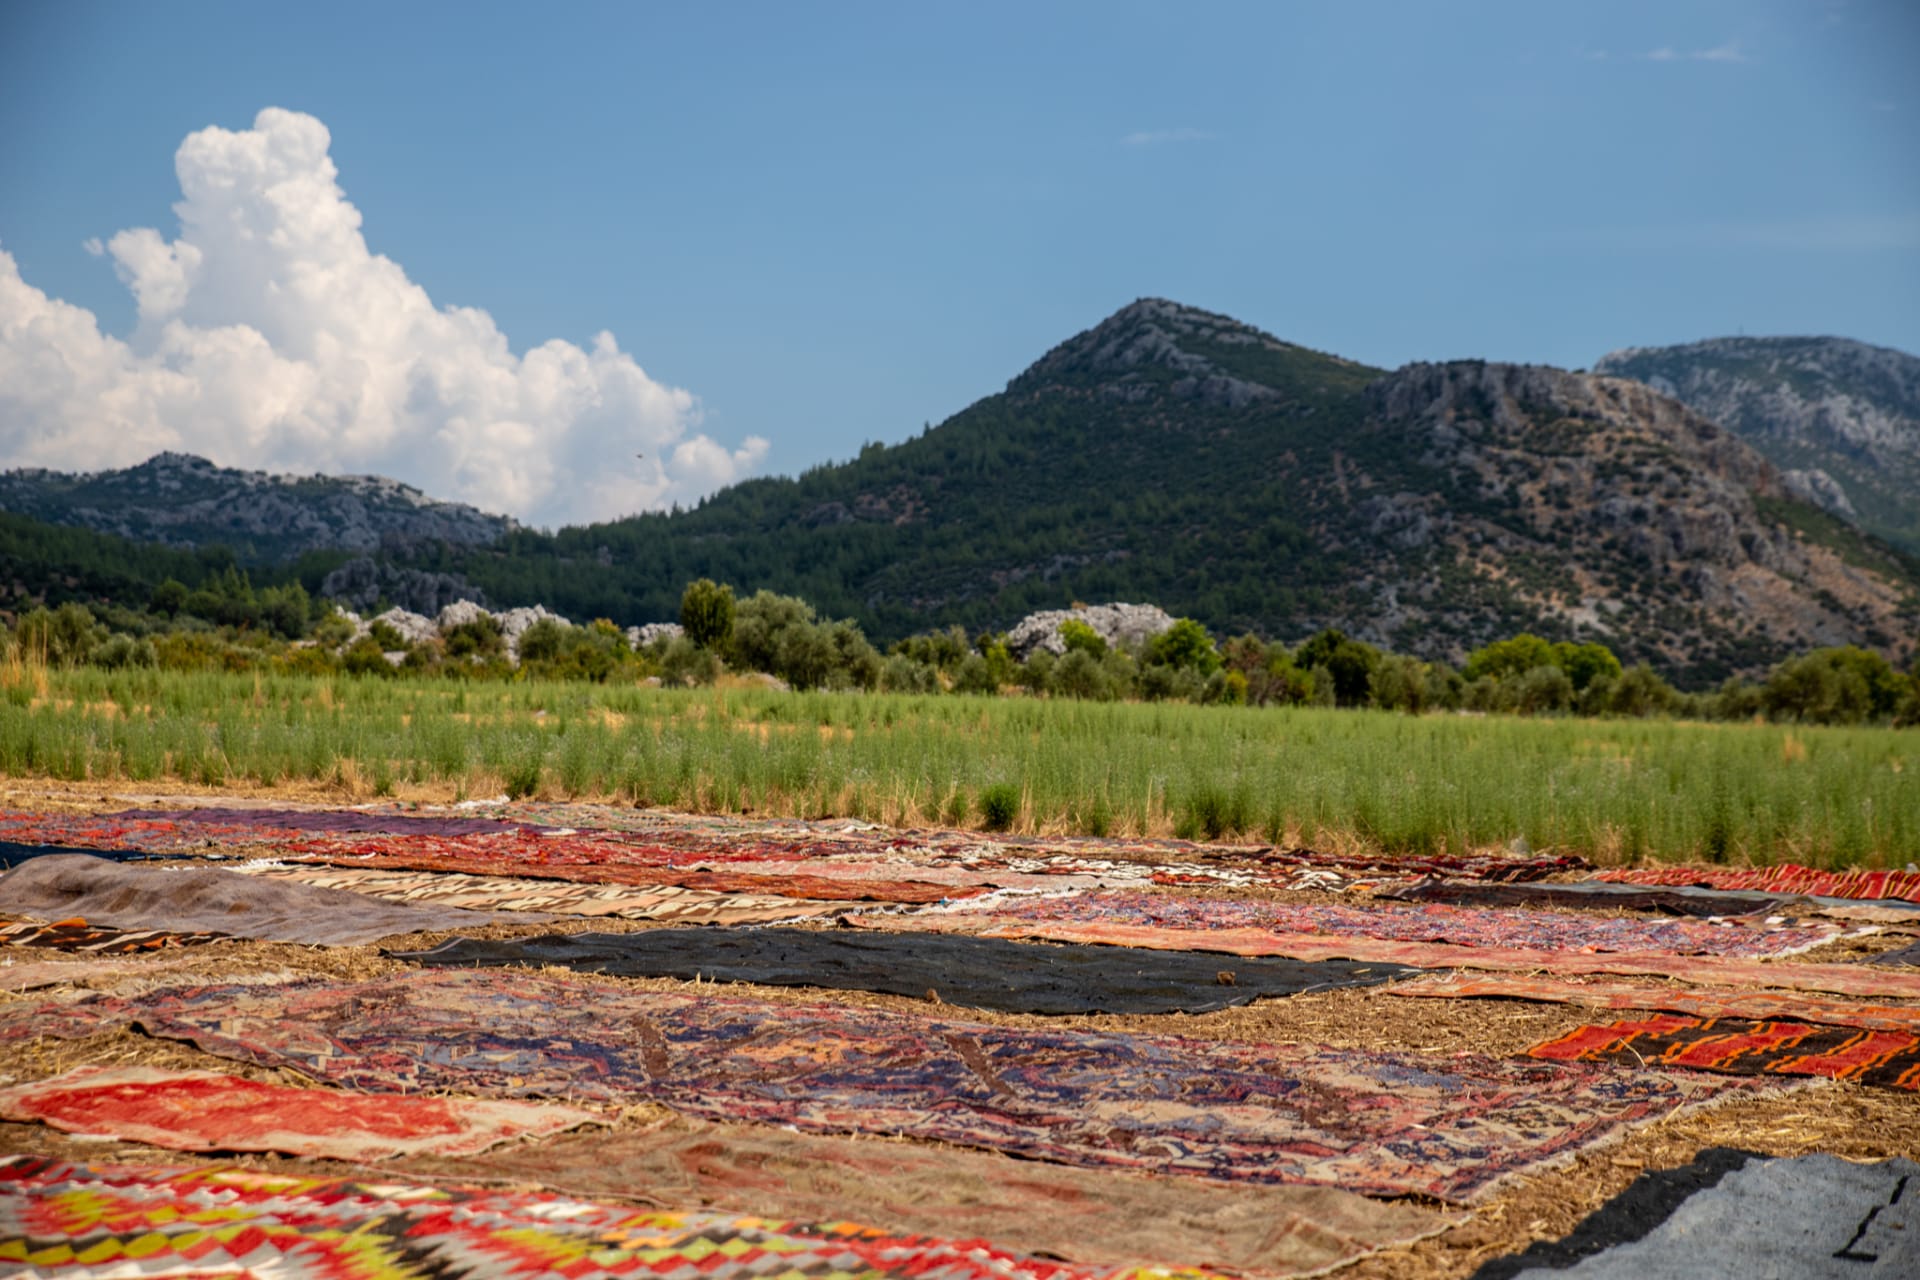 حقول السجاد بتركيا.. تقليد فريد يزين الحقول الخضراء بألوان زاهية مع قدوم الصيف